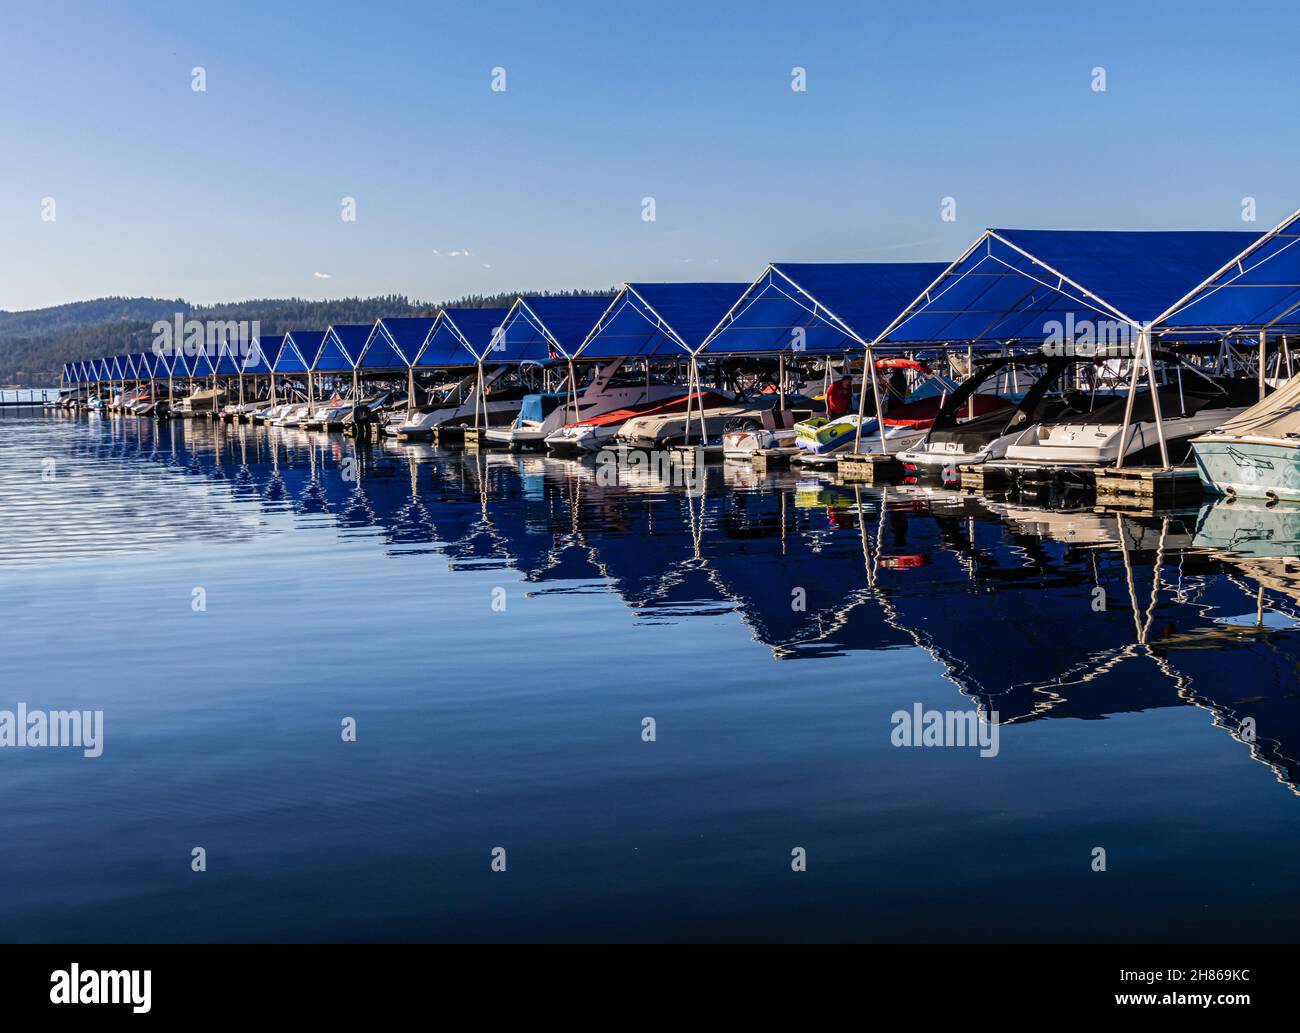 Blue Boat glisse à Marina sur le lac coeur d'Alene, coeur d'Alene, Idaho, Etats-Unis Banque D'Images